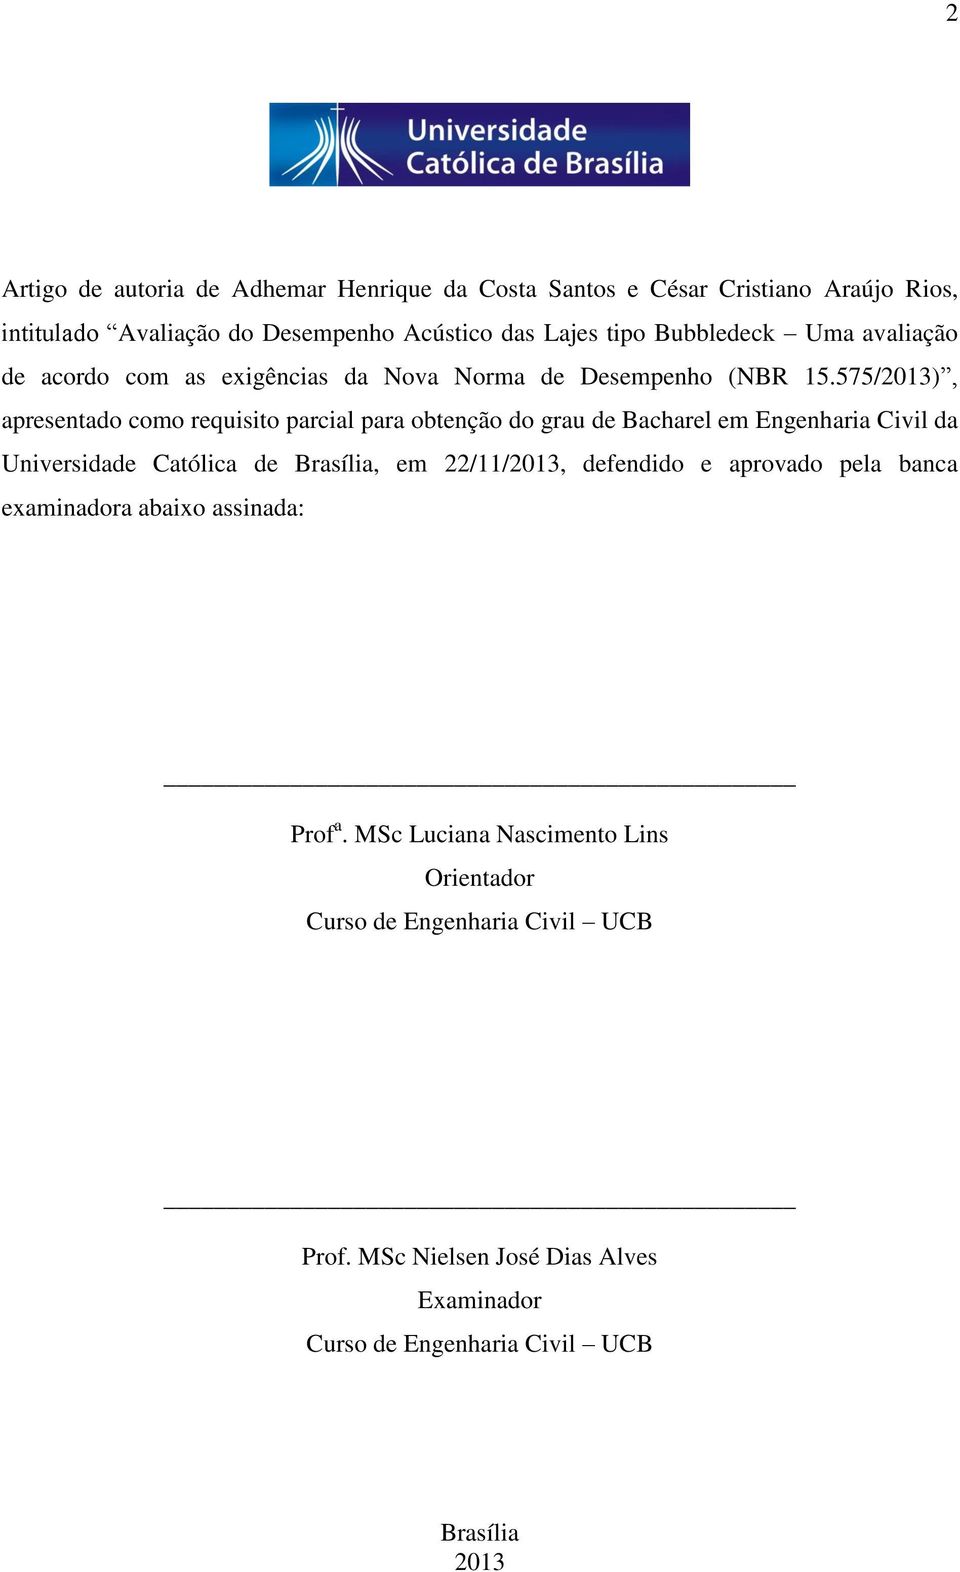 575/2013), apresentado como requisito parcial para obtenção do grau de Bacharel em Engenharia Civil da Universidade Católica de Brasília, em 22/11/2013,